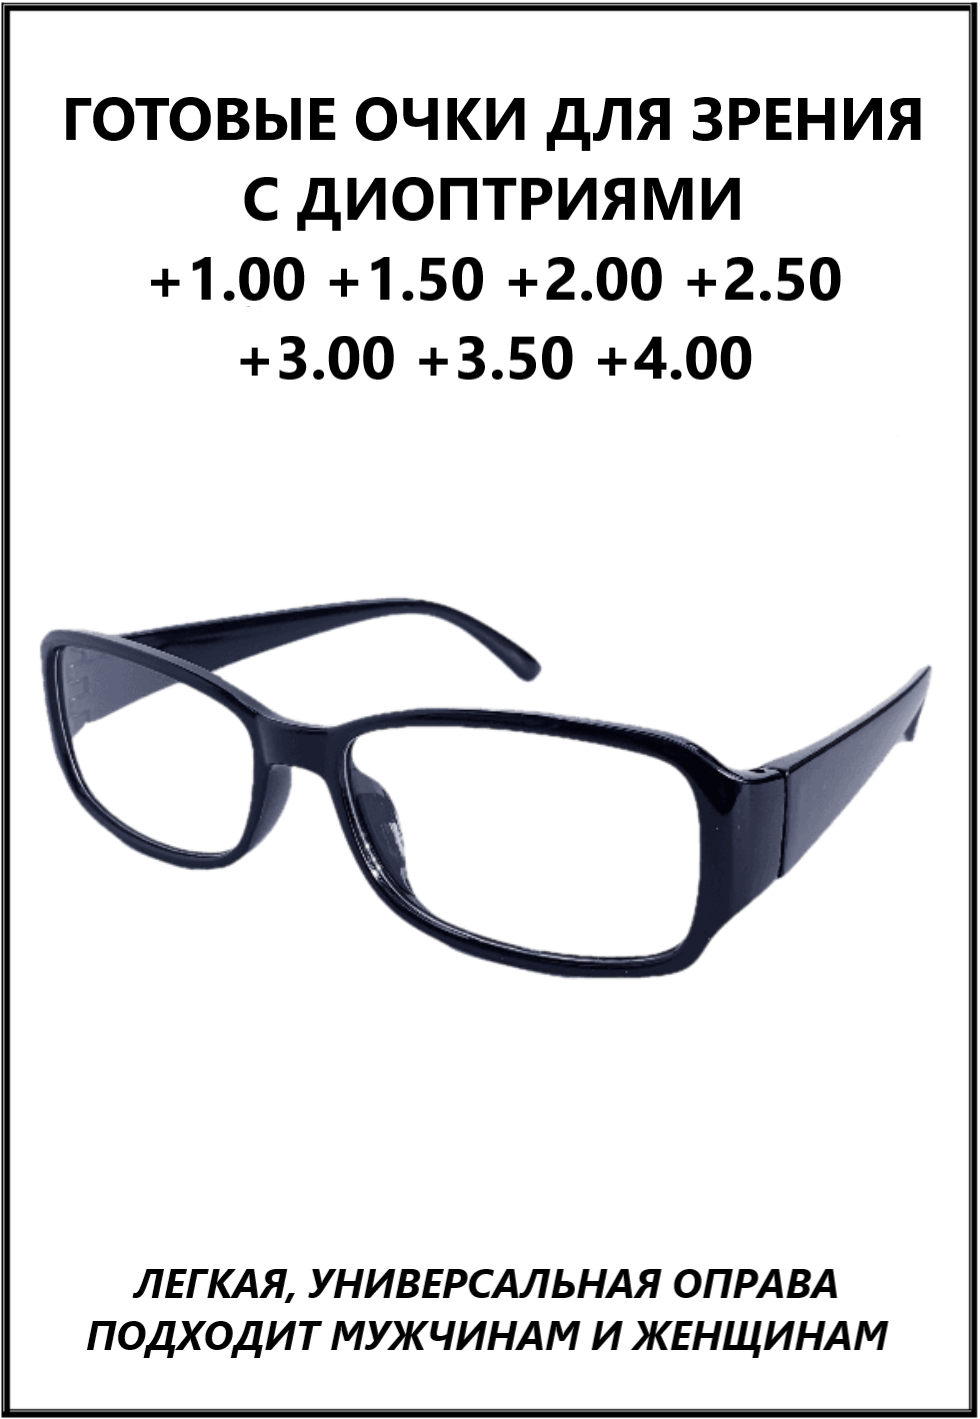 Очки готовые пластиковые женские мужские +3.00 корригирующие зрения для чтения, купить оптику плюс с диоптриями и прозрачными линзами.